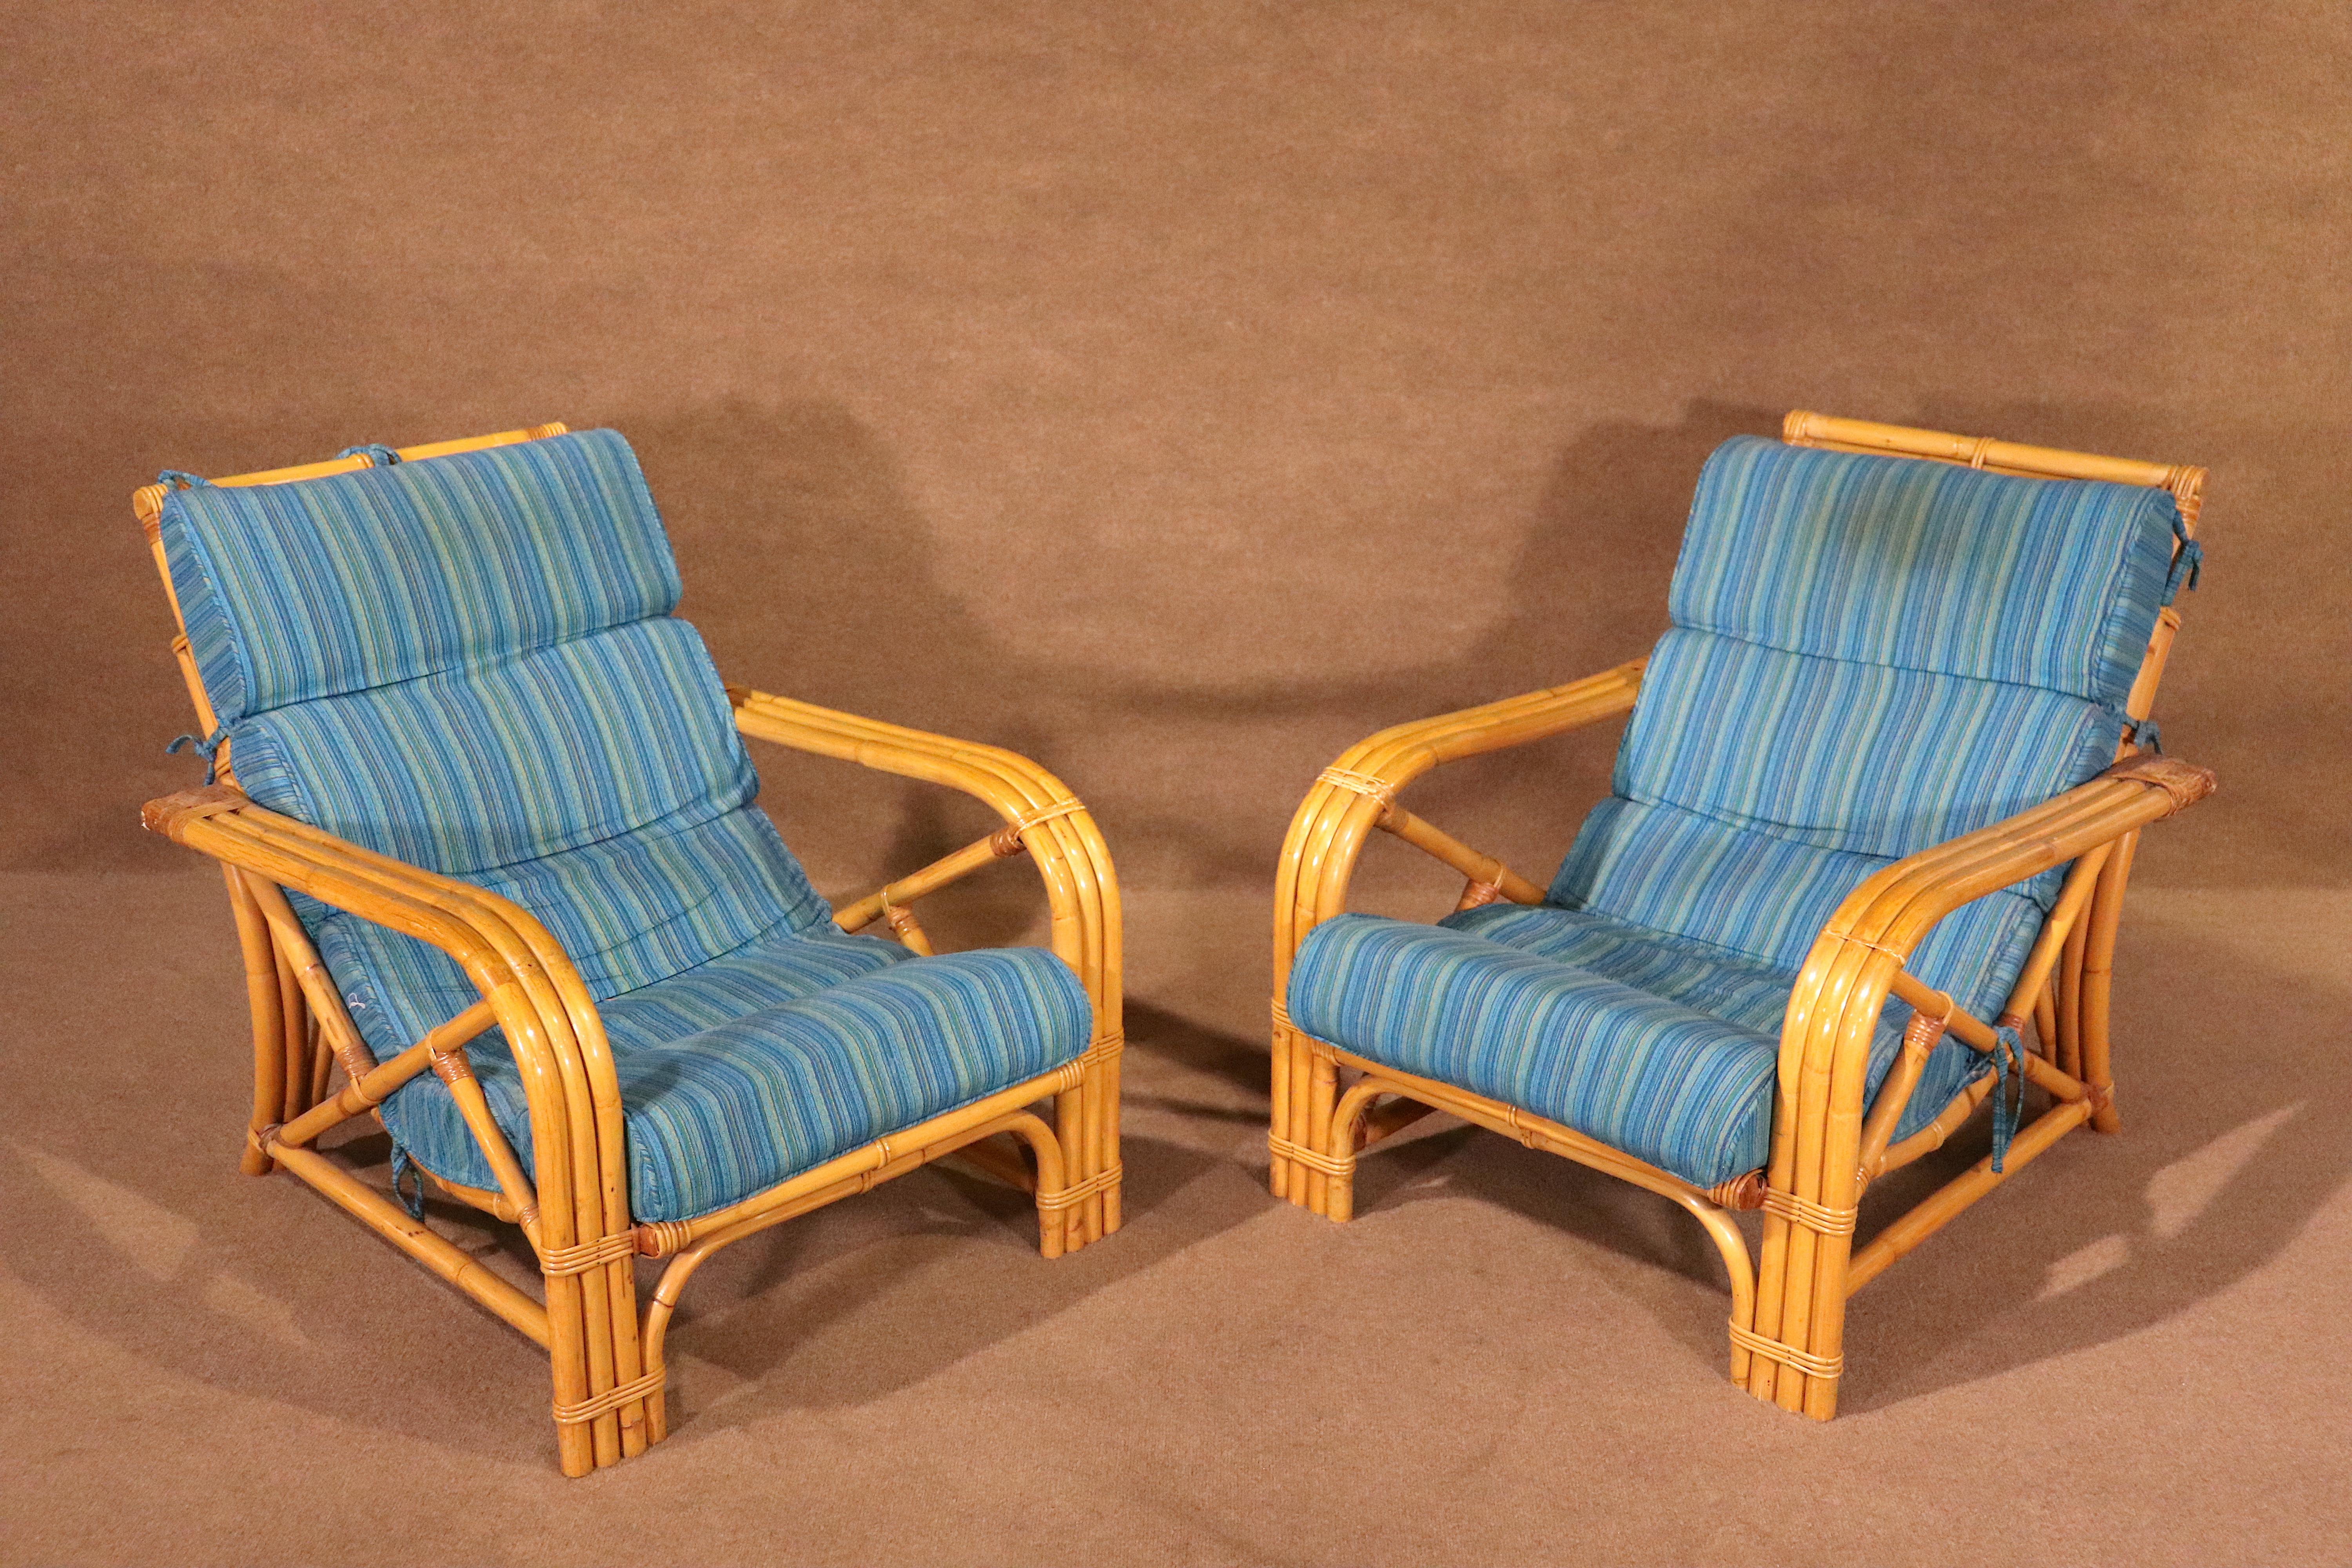 Paire de chaises en bambou du milieu du siècle, élégantes et robustes, construites en bambou et en rotin. Un design vintage unique, un siège rembourré et de superbes couleurs complémentaires.

Veuillez confirmer le lieu d'enlèvement, NY ou NJ.